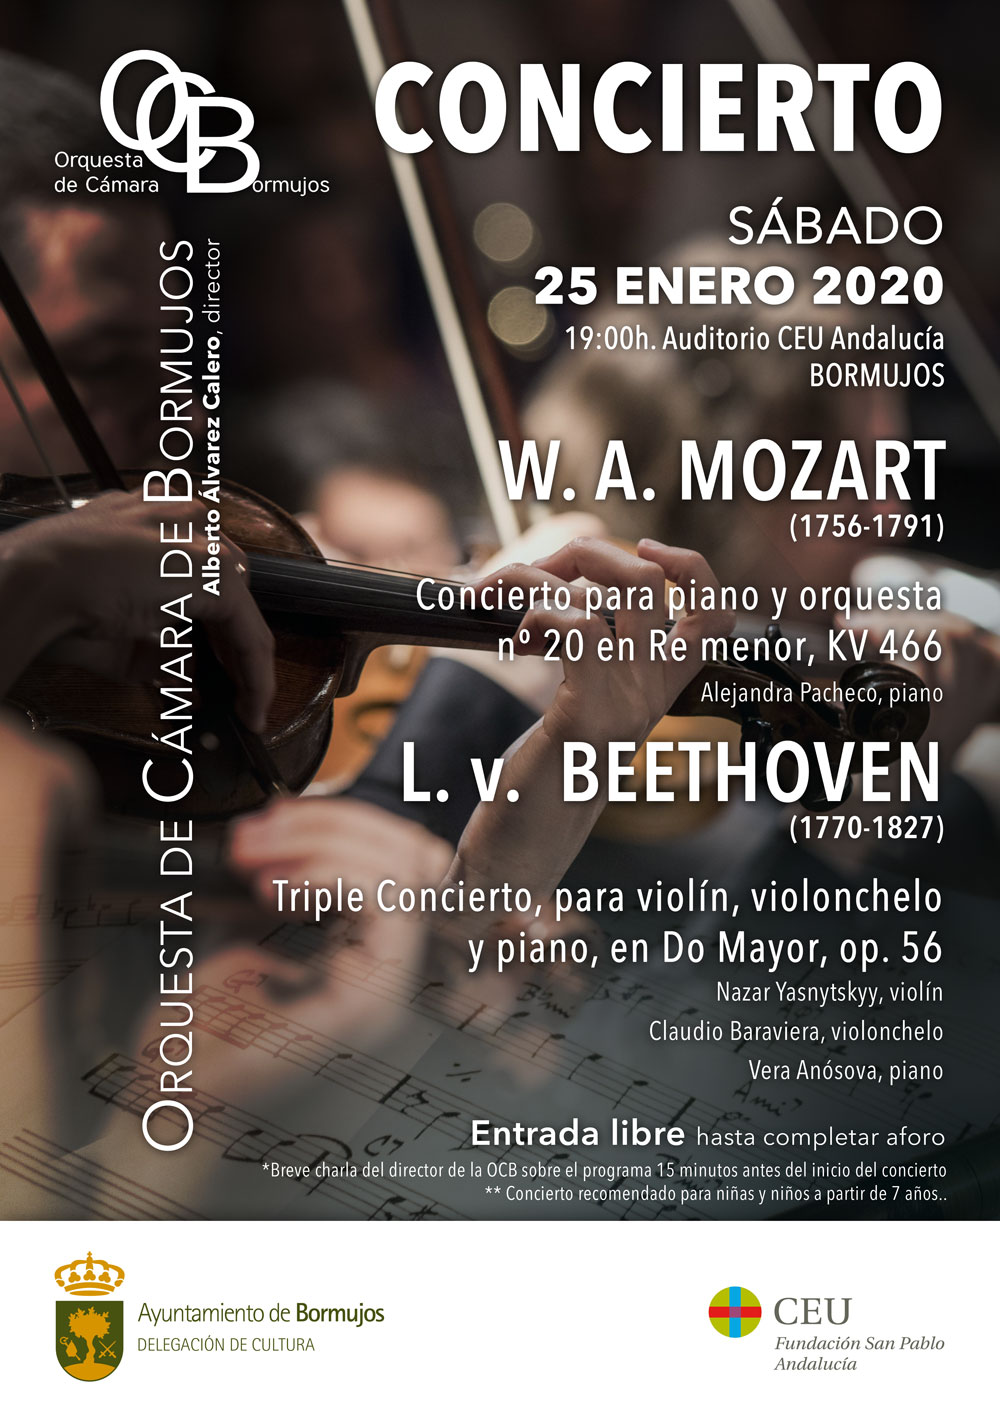 Orquesta-de-camara-concierto-OCB-enero-2020 (1)